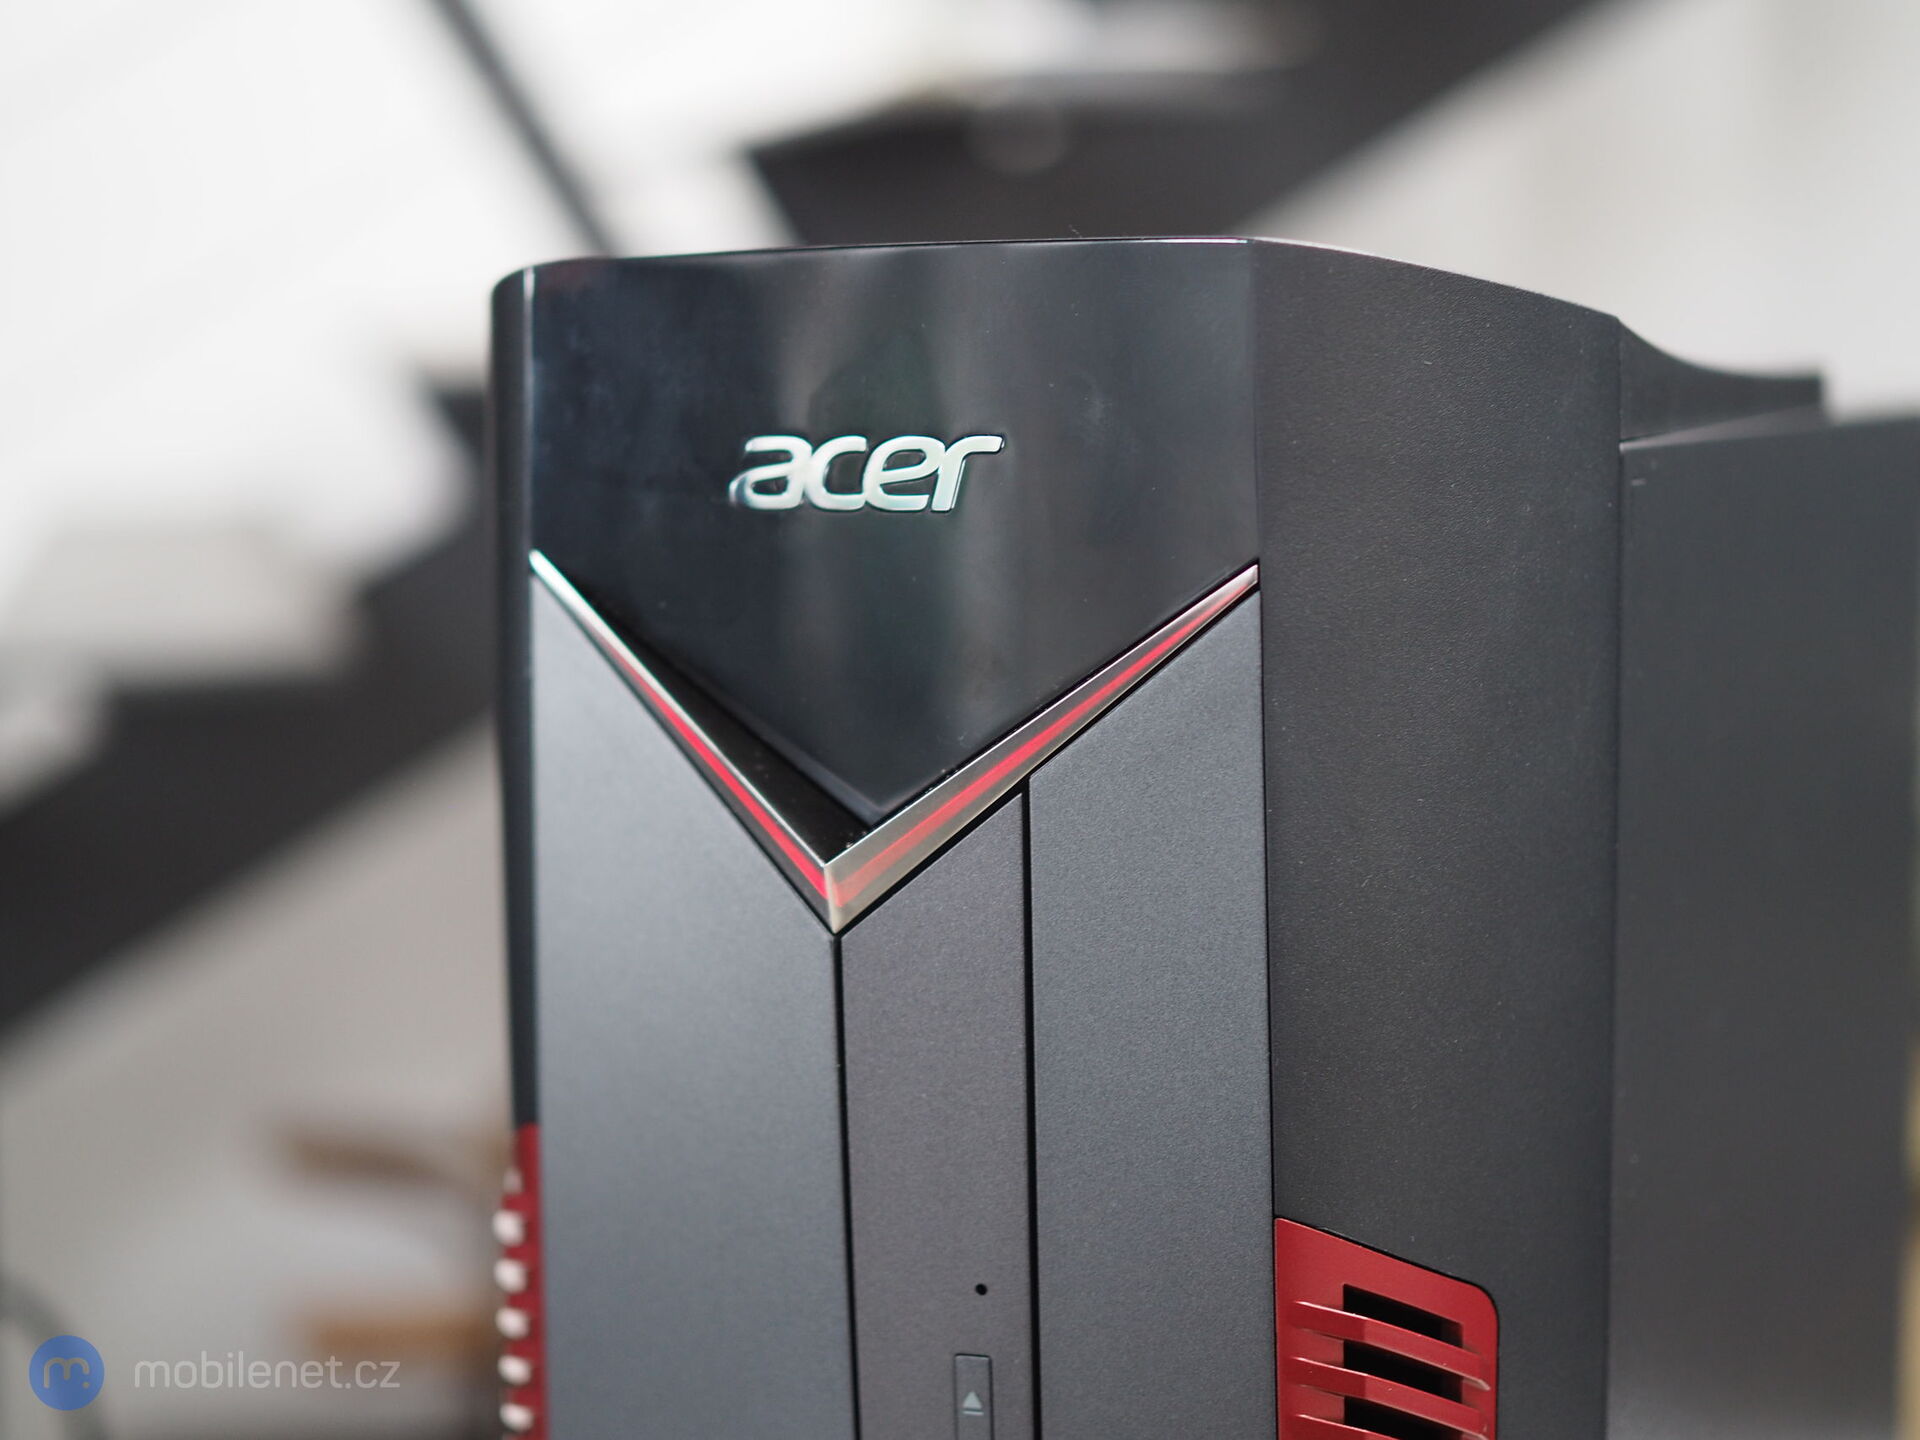 Acer Nitro 50